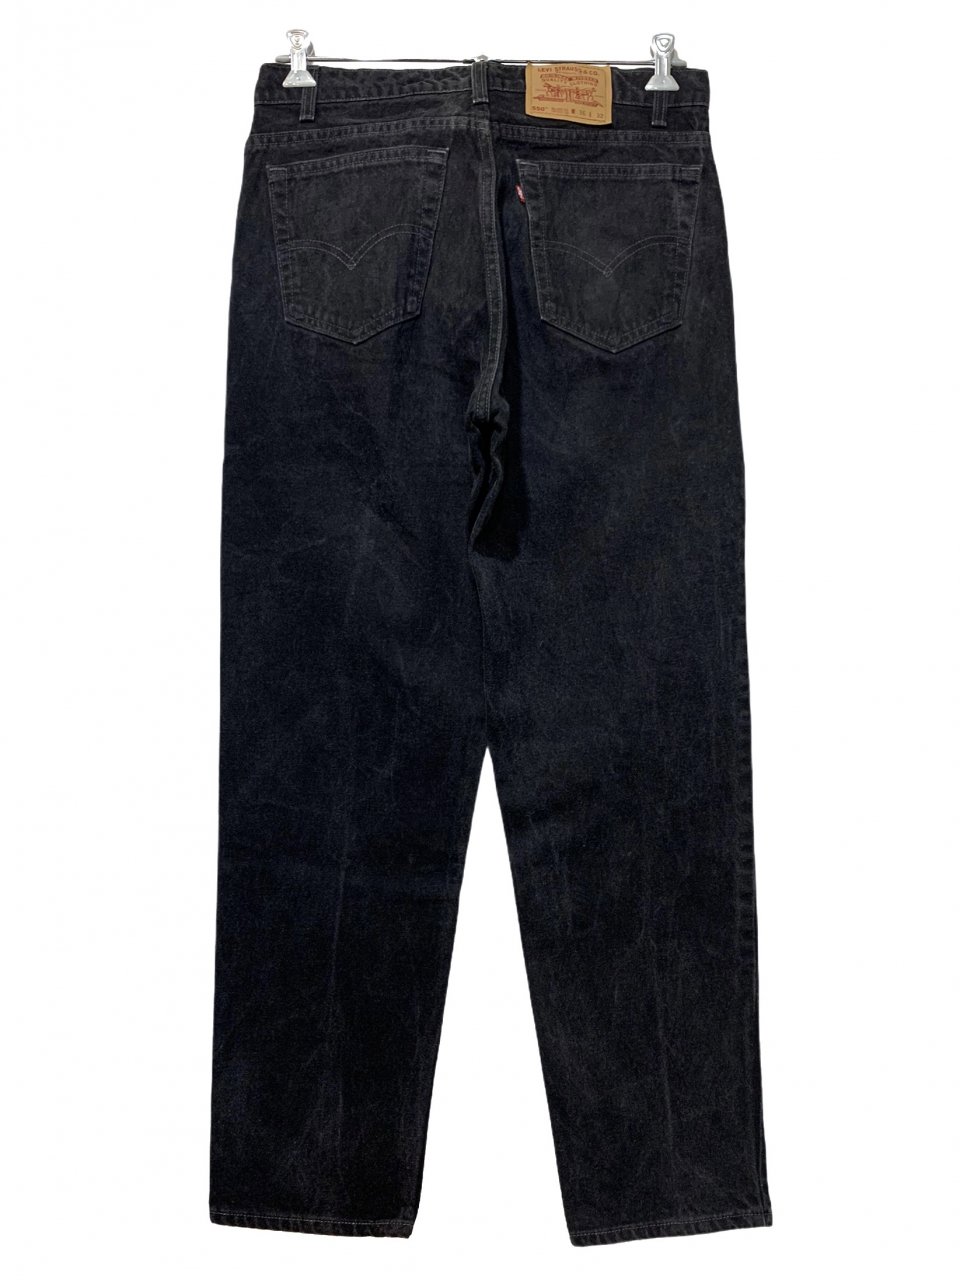 USA製 90s Levi's 550 Black Denim Pants 黒 W34×L32 リーバイス Levis 